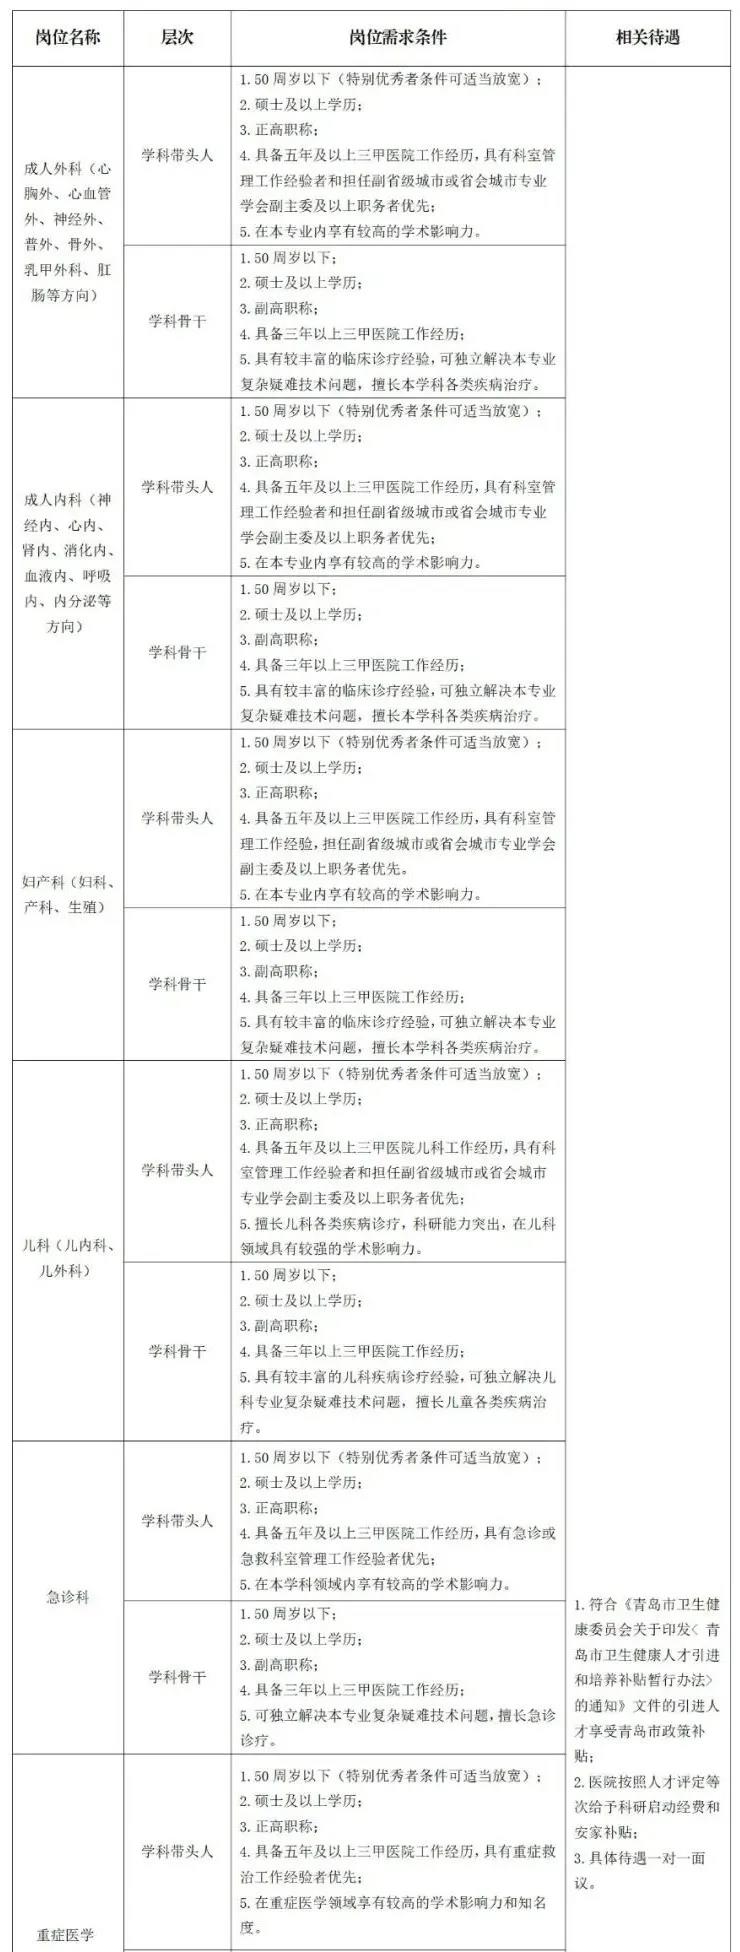 青岛大学附属妇女儿童医院人才招聘需求计划表